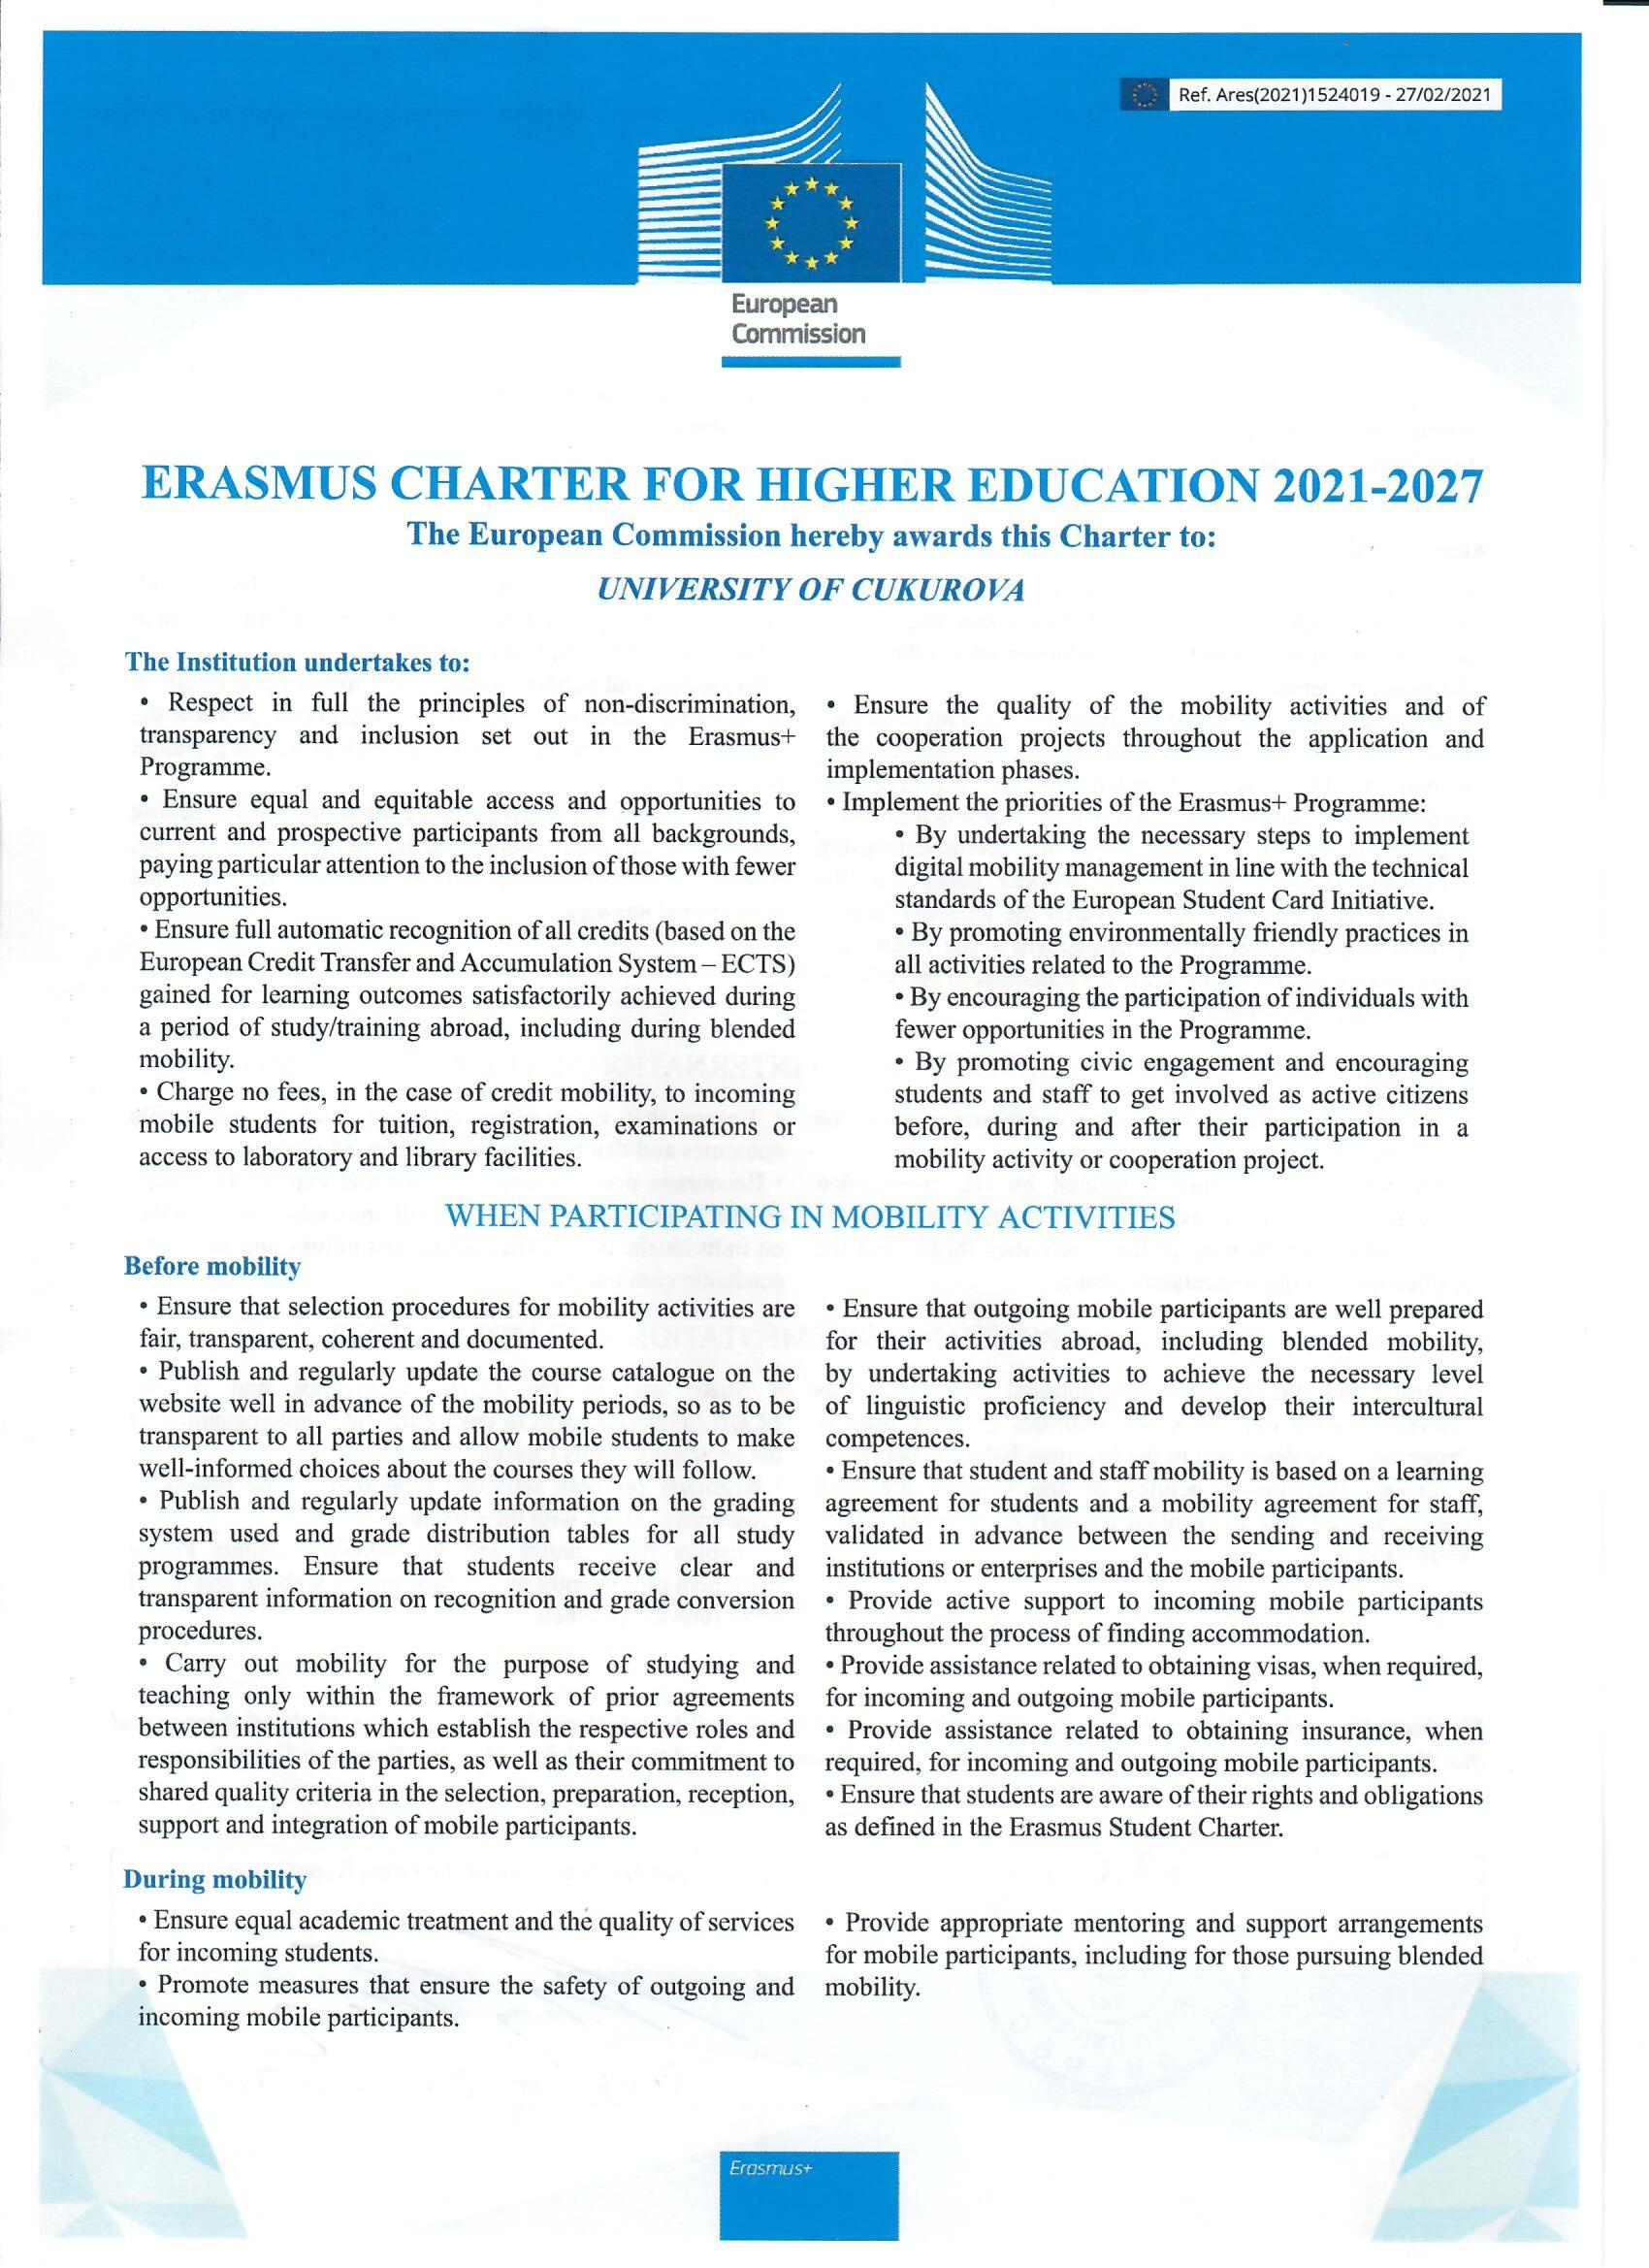 Üniversitemizin Yüksek Öğrenim için Erasmus Beyannamesi (ECHE) Onaylandı.